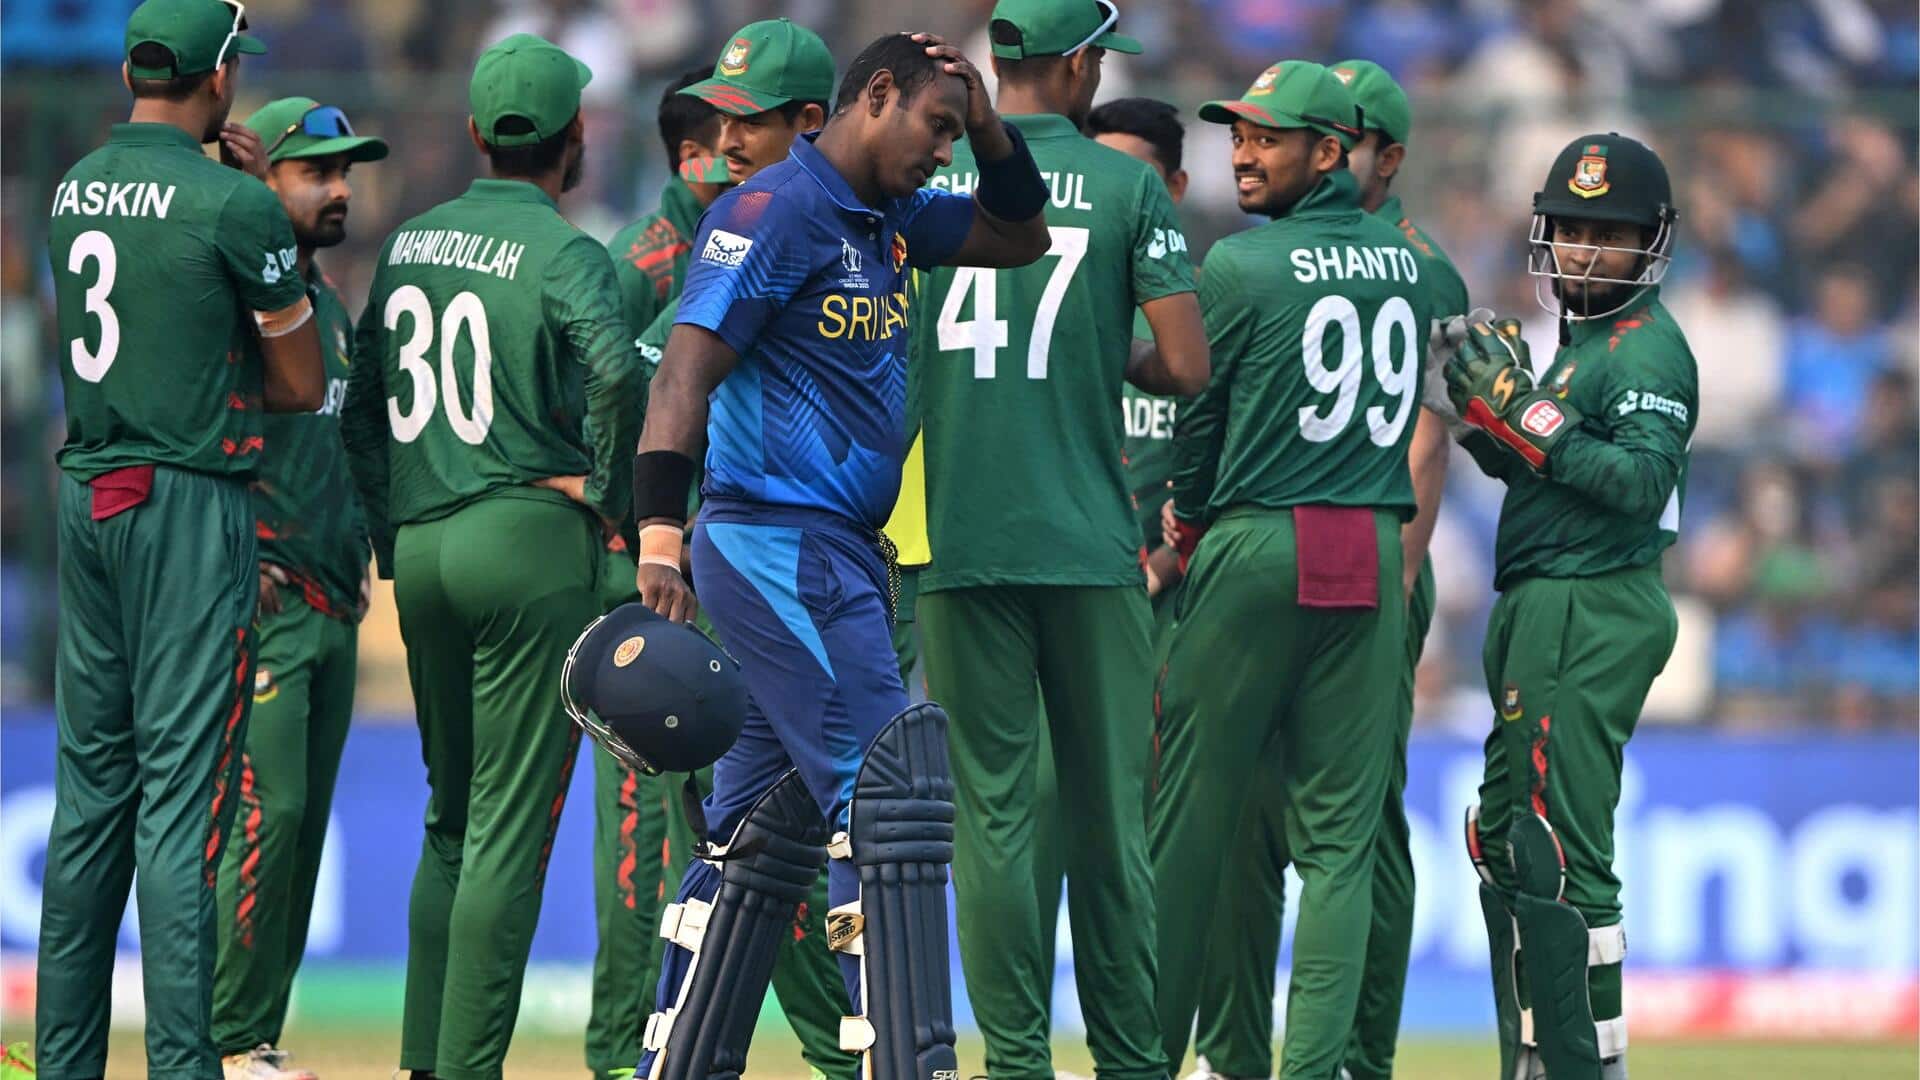 World Cup: Ton-up Asalanka guides SL to 279 against Bangladesh